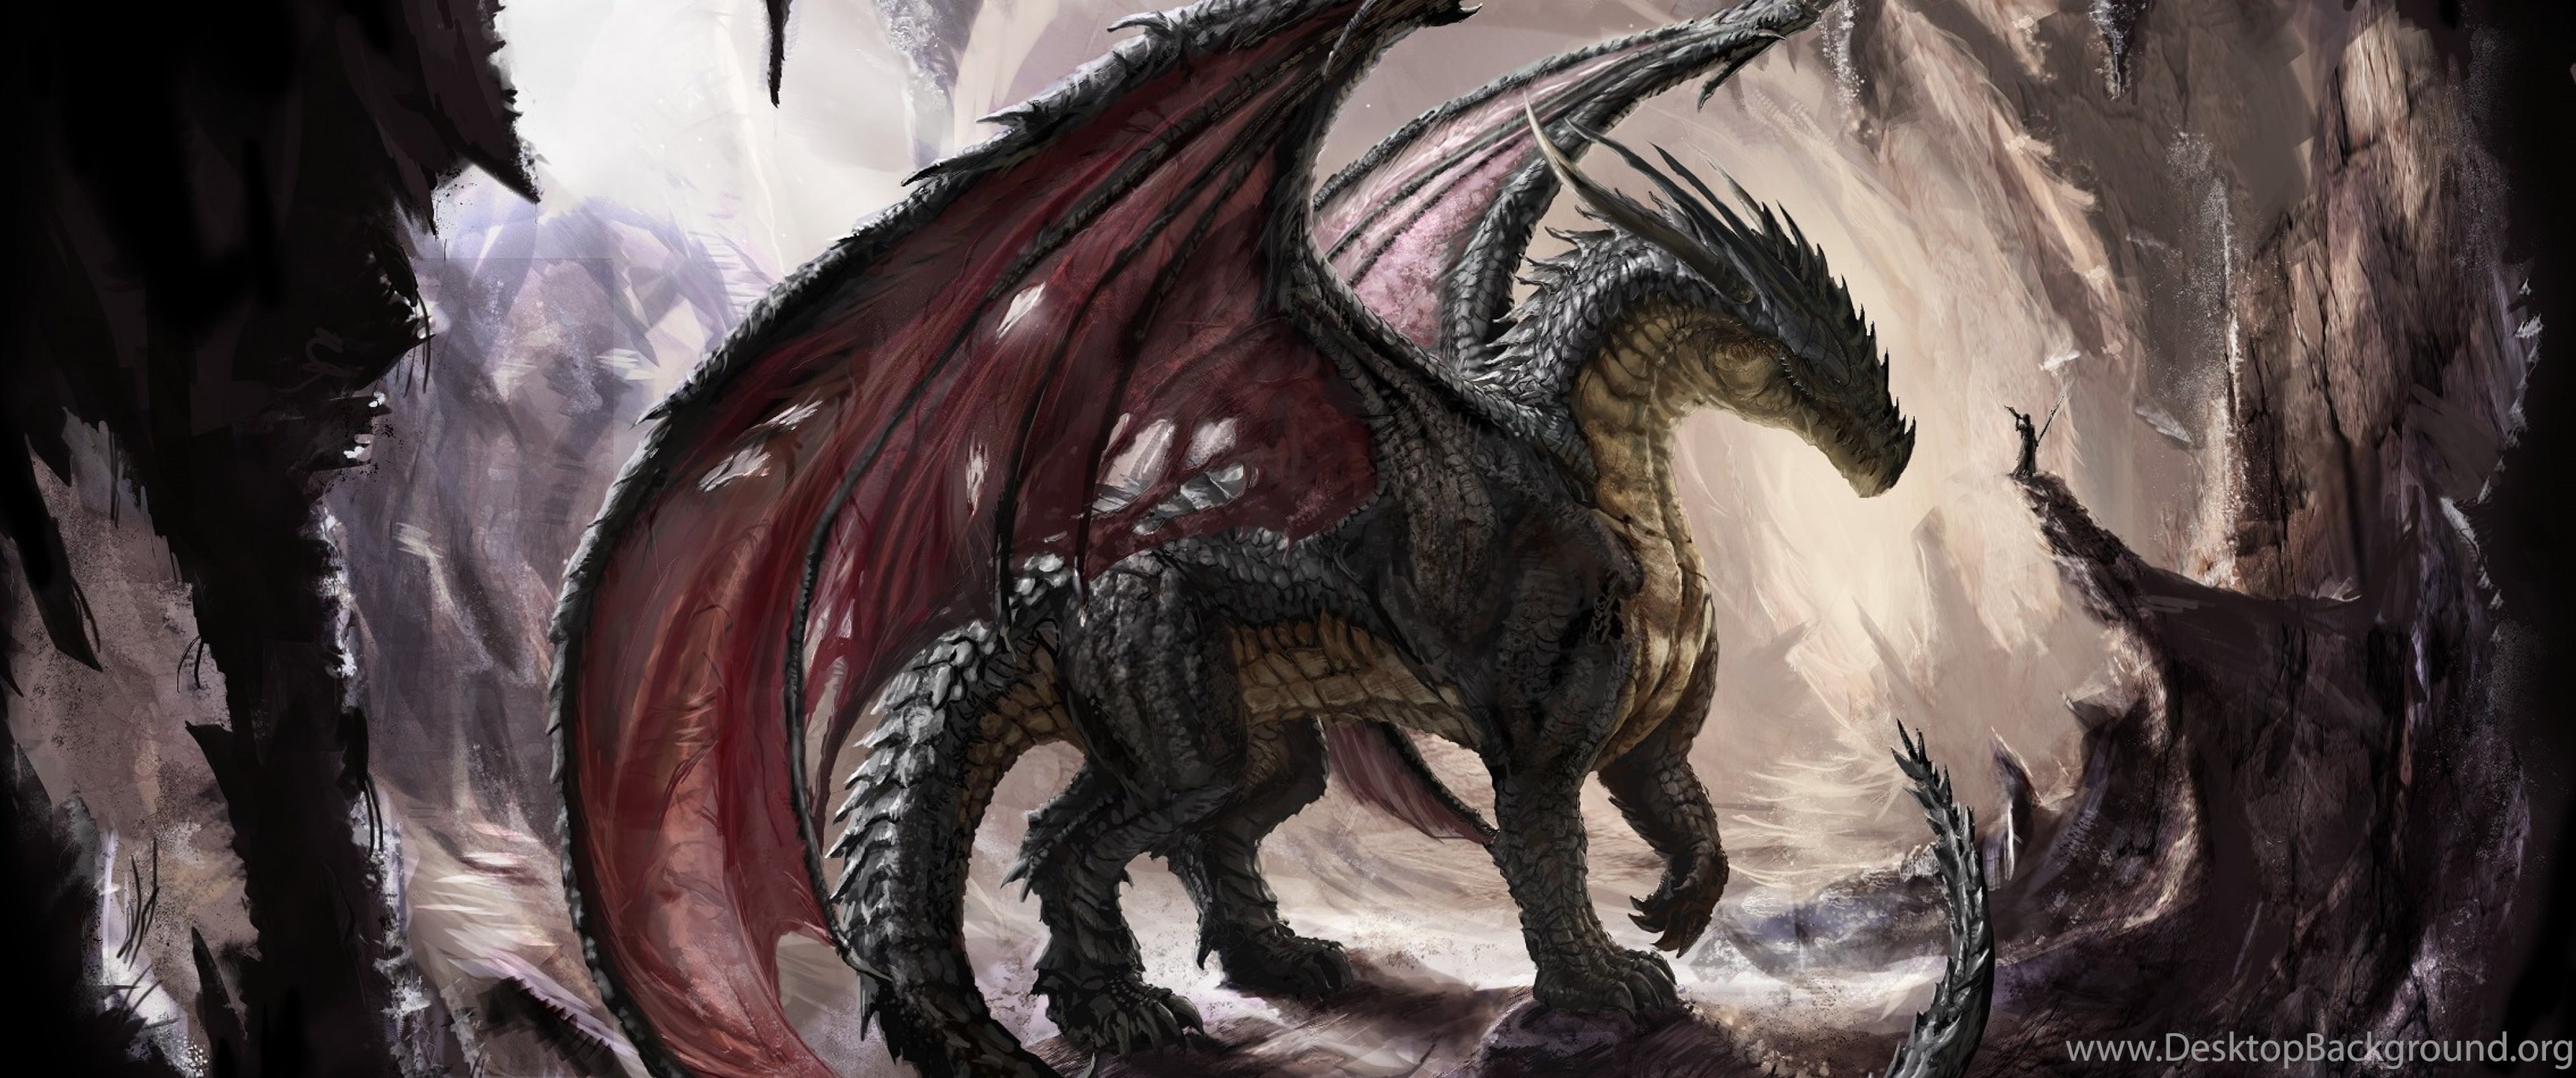 dragones fondos de pantalla hd,continuar,personaje de ficción,criatura mítica,cg artwork,mitología